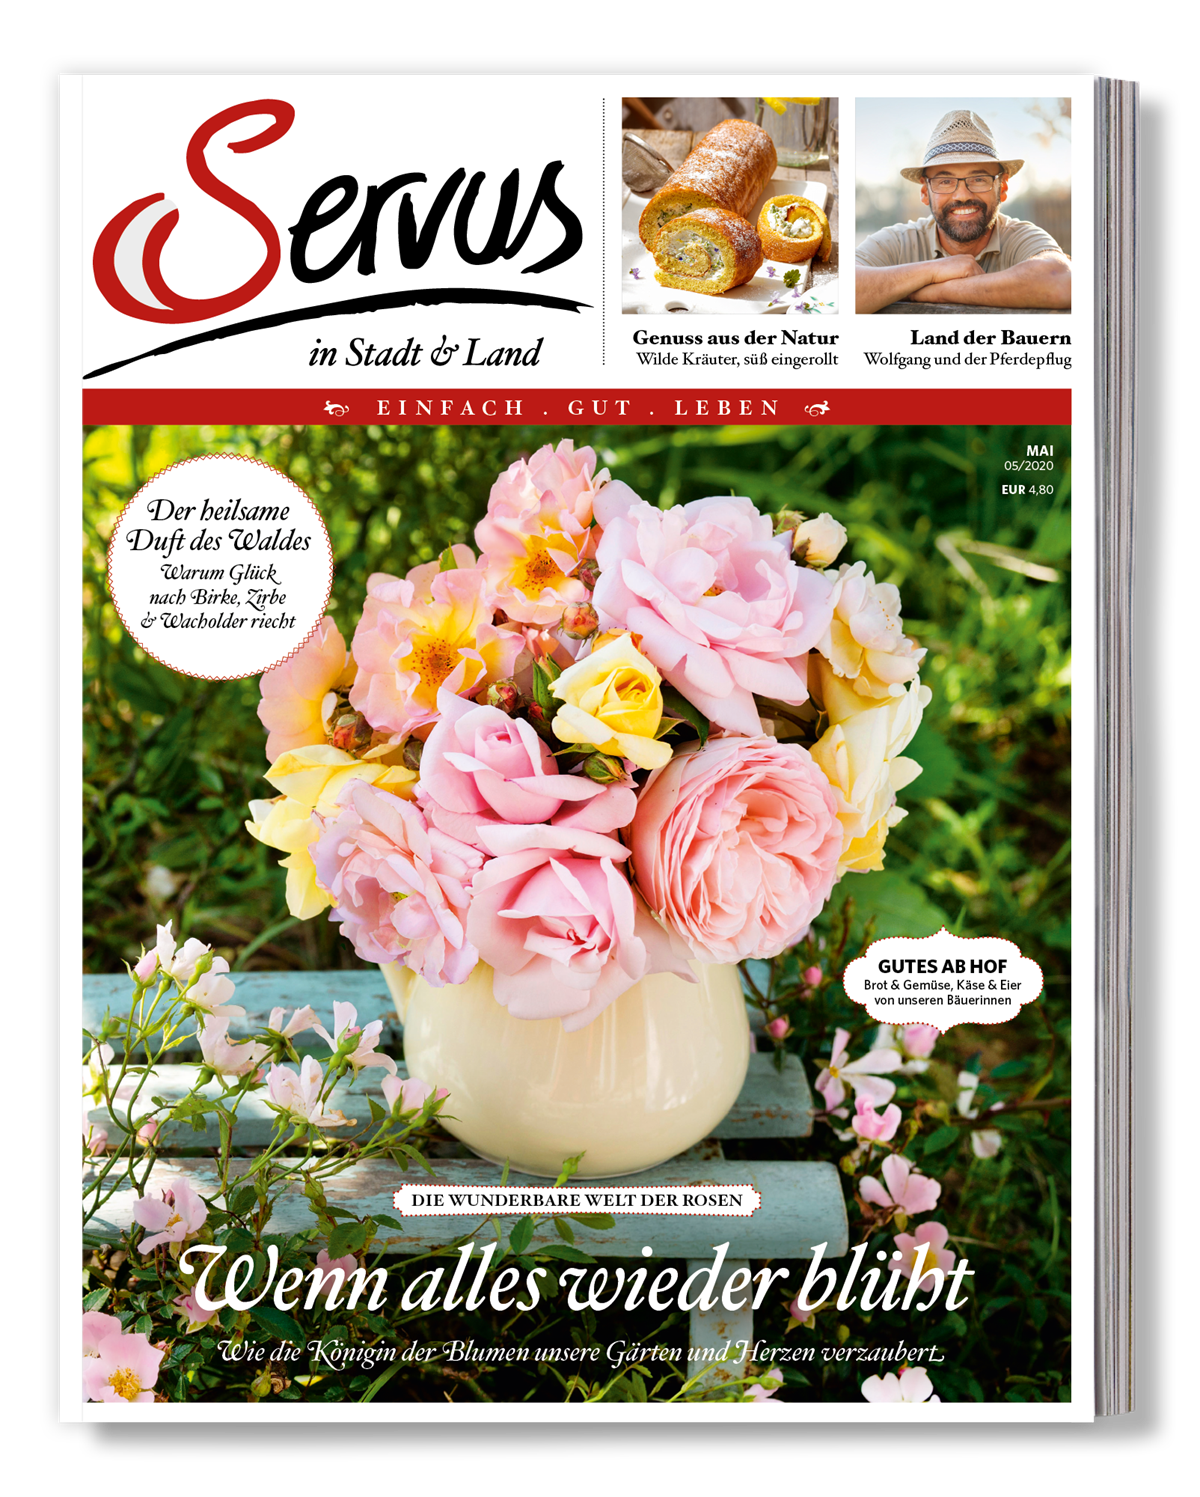 Servus in Stadt & Land_Ausgabe_Mai_Cover